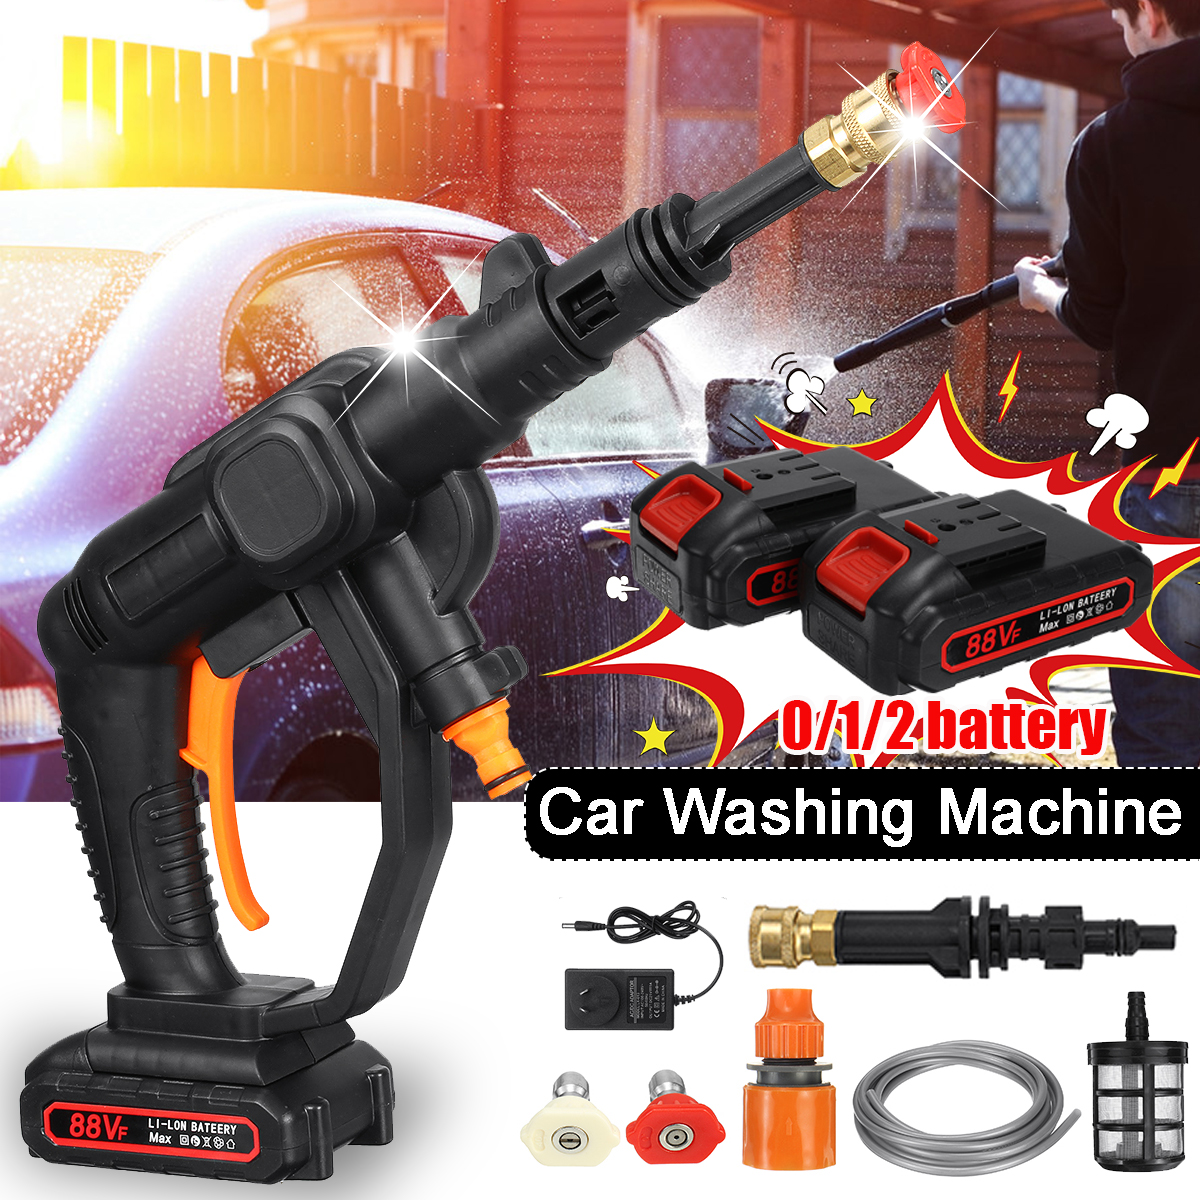 24V-507psi-Wireless-High-Pressure-Washer-Cleaner-Car-Washing-Machine-Water-Spray-Guns-W-None12-Batte-1872424-2